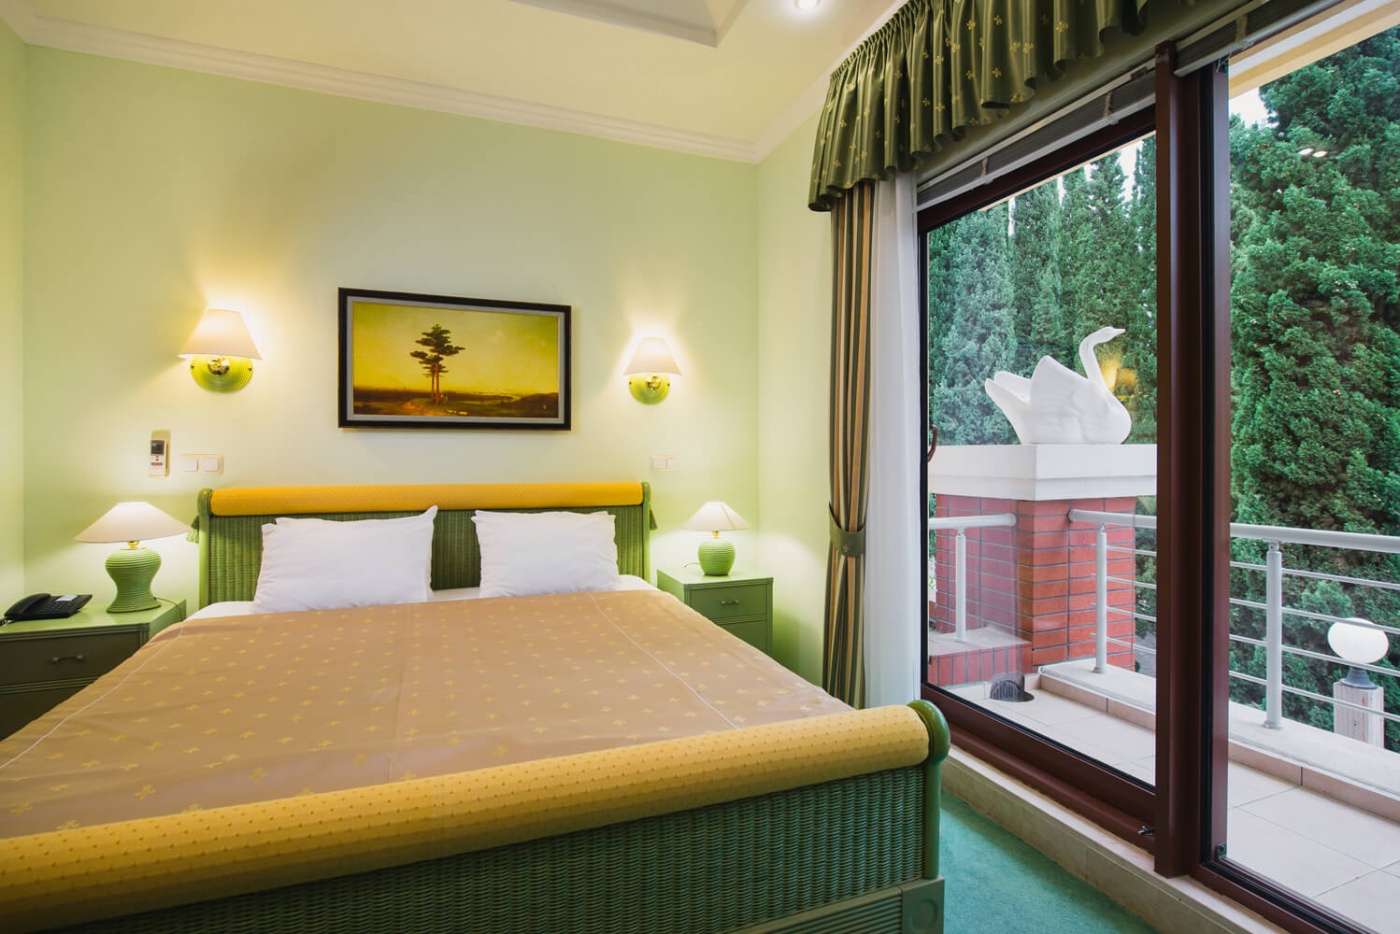  Отель «More Spa & Resort» Республика Крым Дуплекс с двумя спальнями